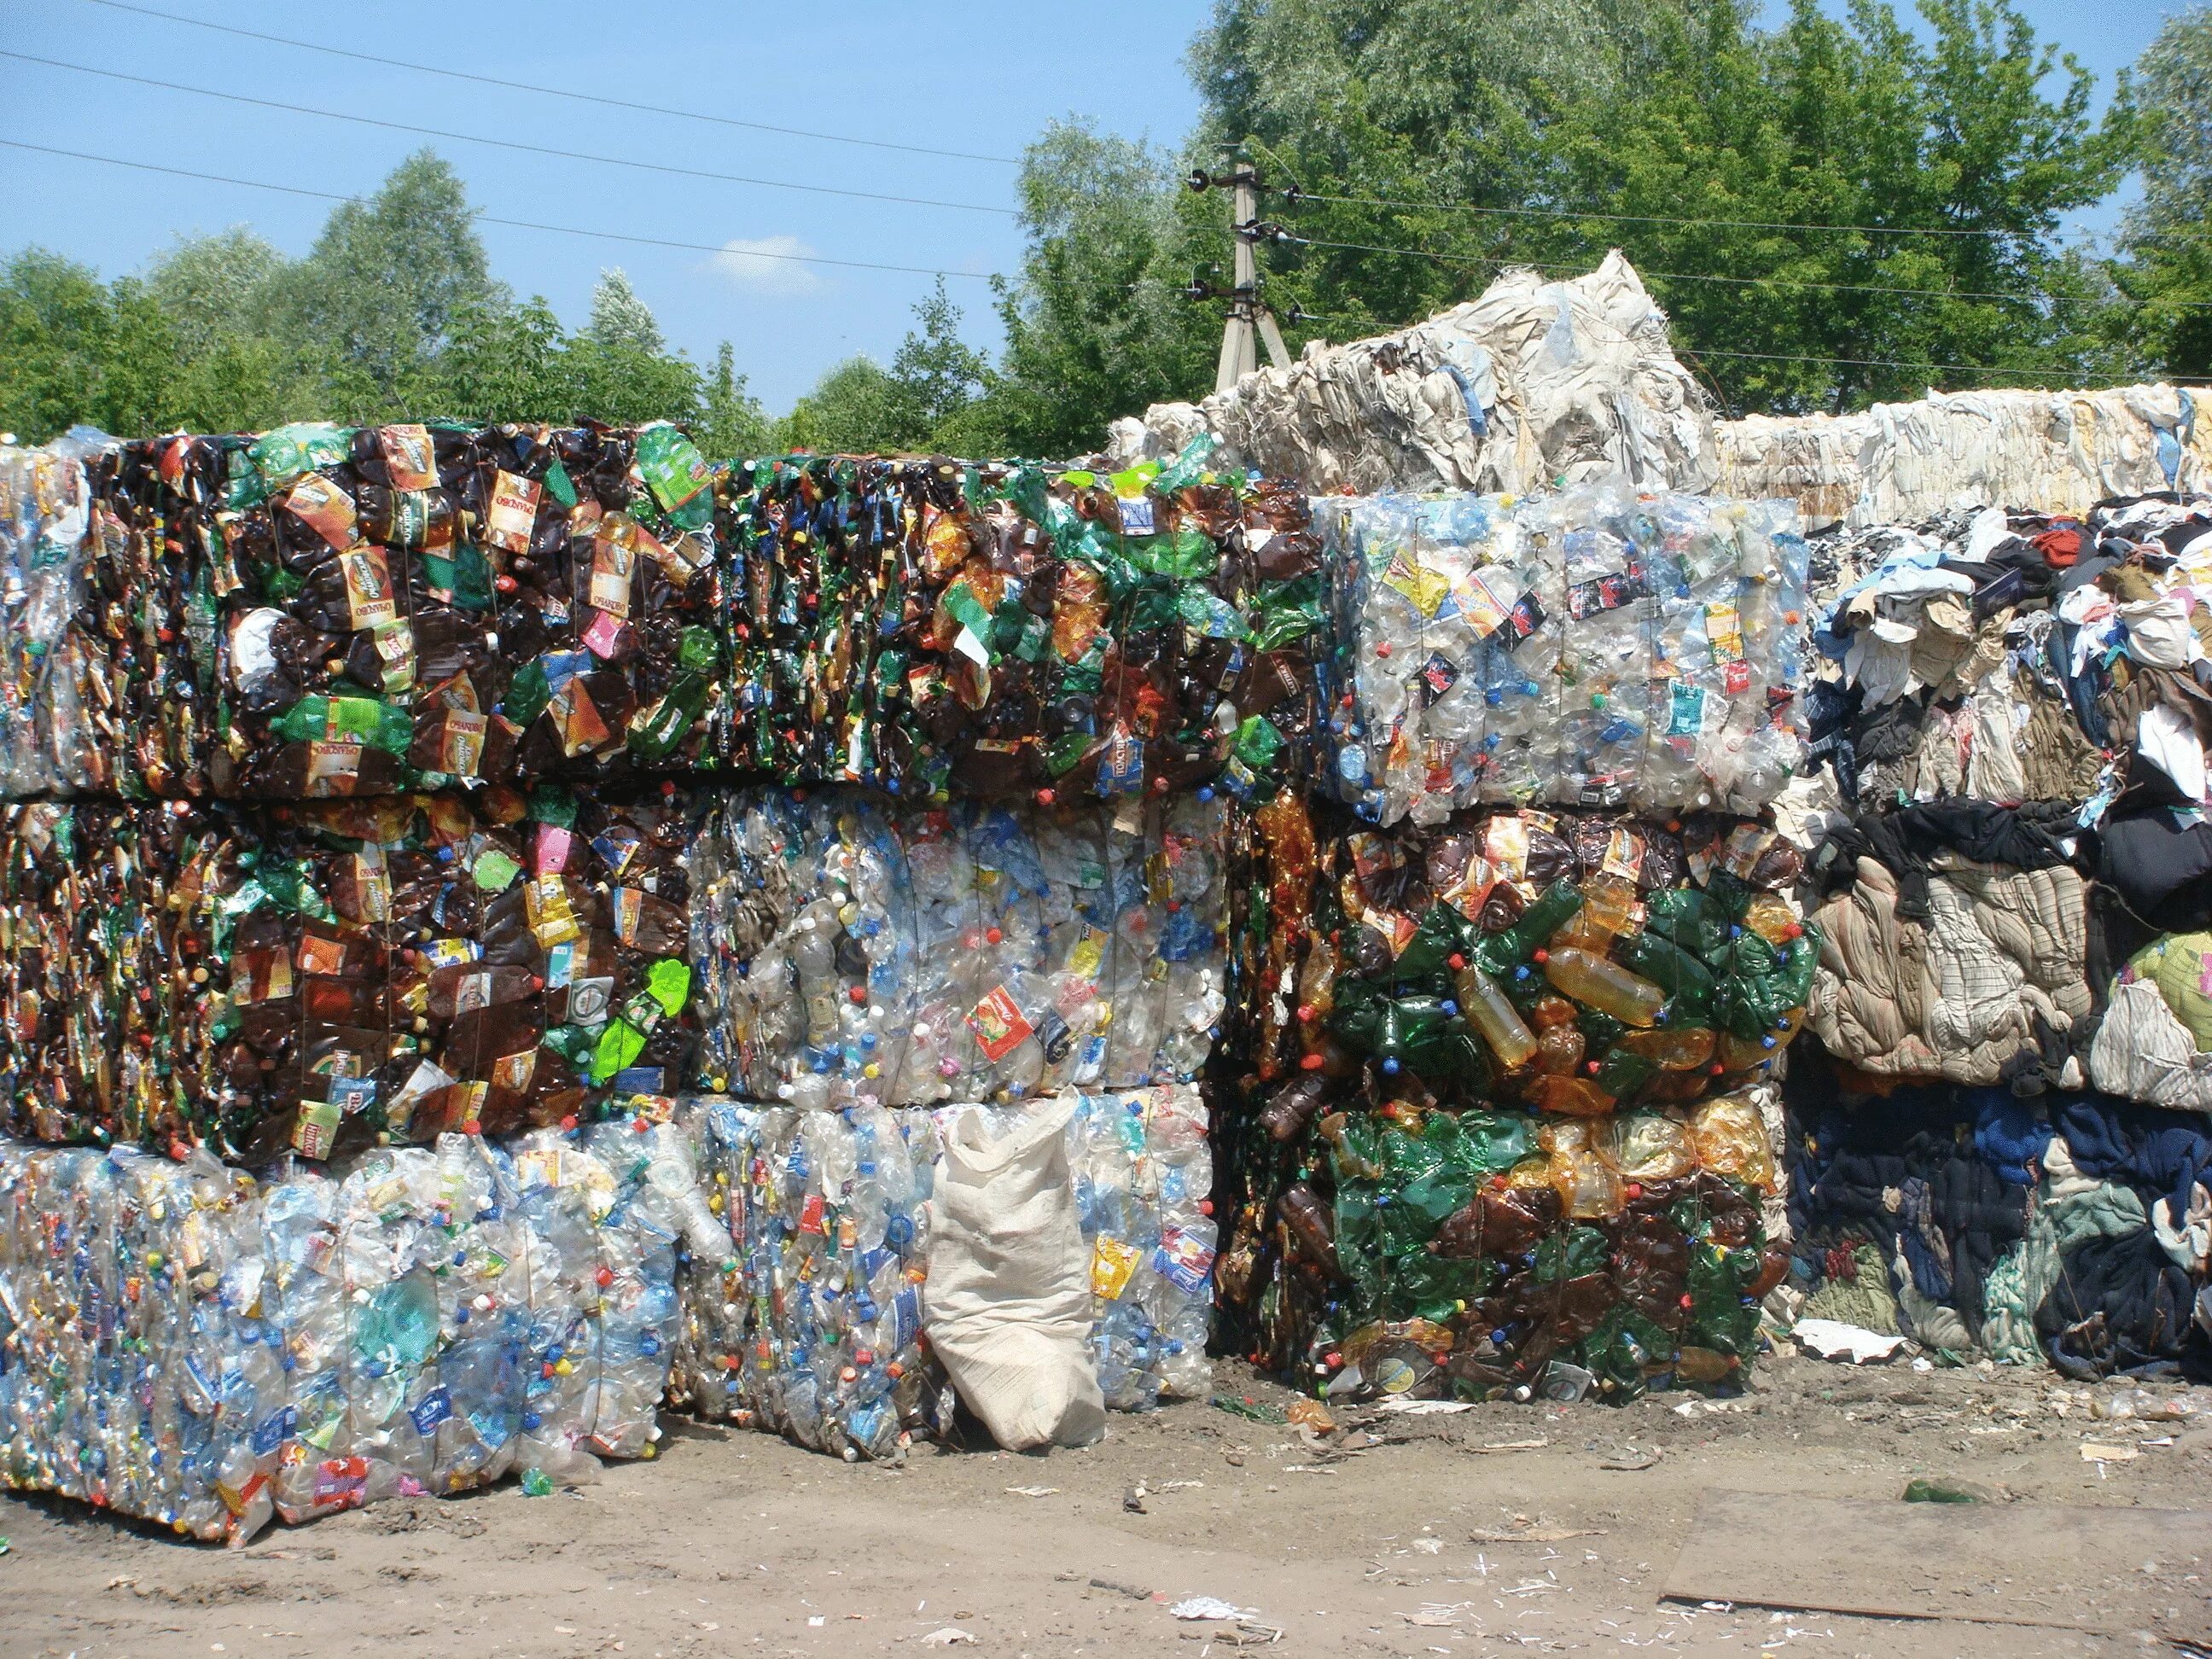 Х отходов. Складирование мусора. Прессованный пластик вторсырье. Утилизация макулатуры. Переработка мусора и отходов.